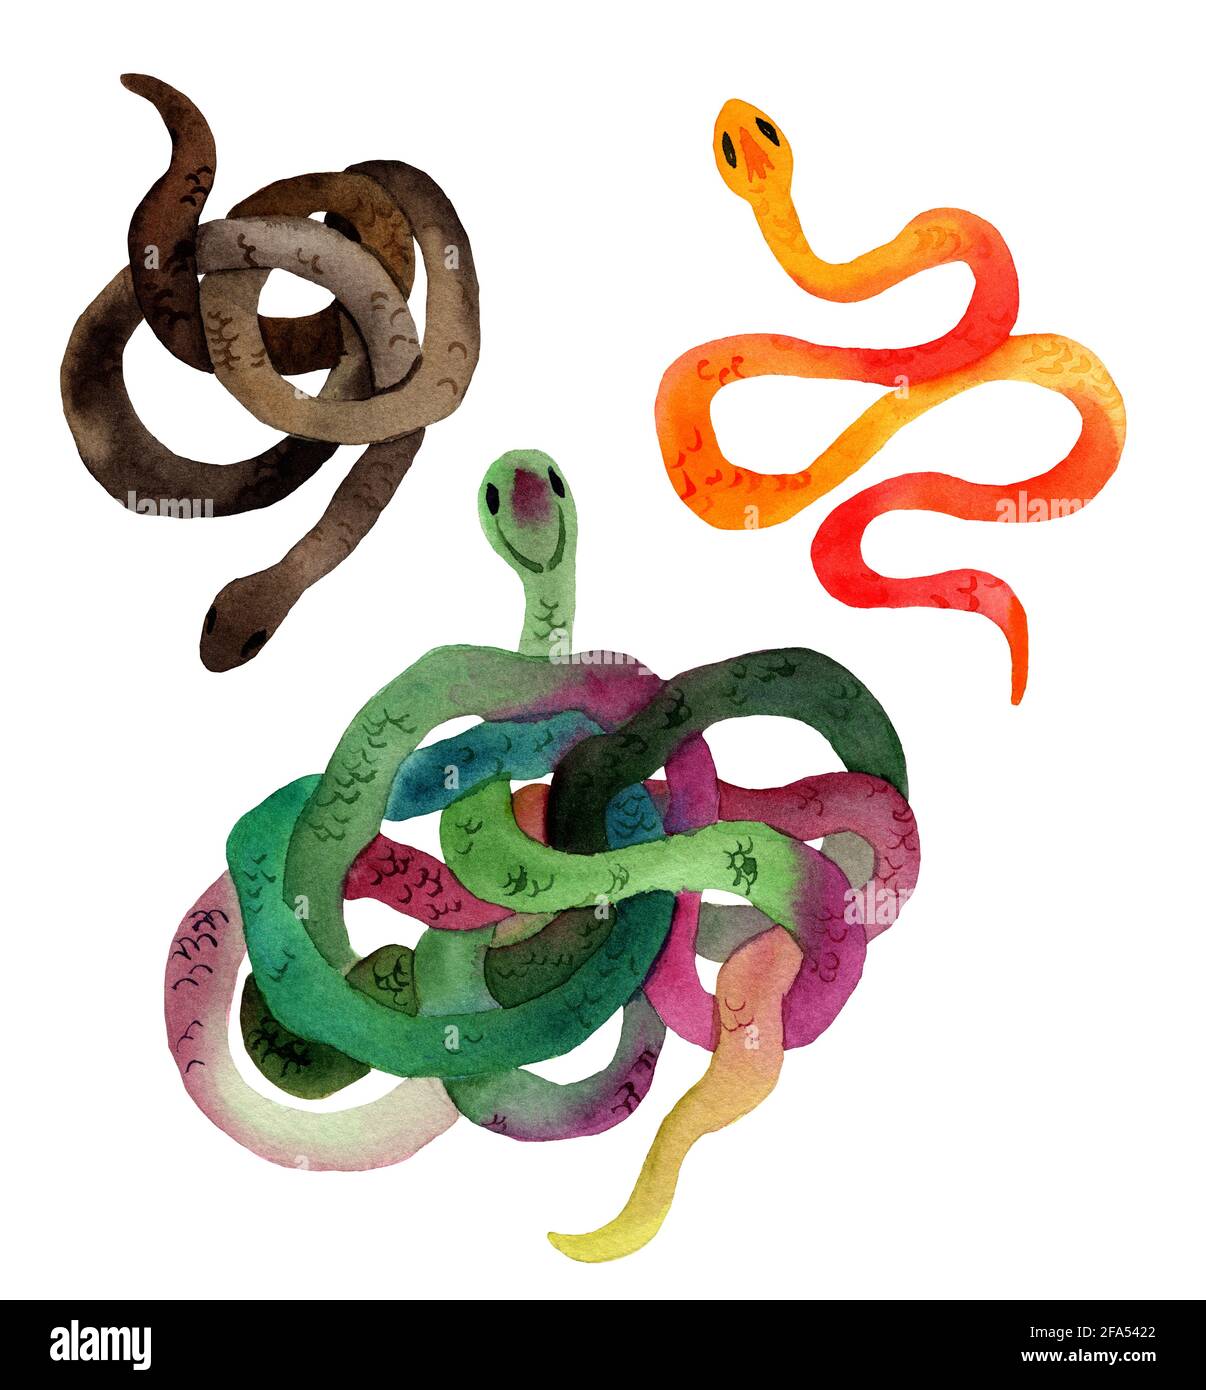 Aquarelle dessin à la main de serpents dans des couleurs orange, marron, vert avec texture de peau. Le serpent est en forme d'anneau. Dessin animé animal Banque D'Images